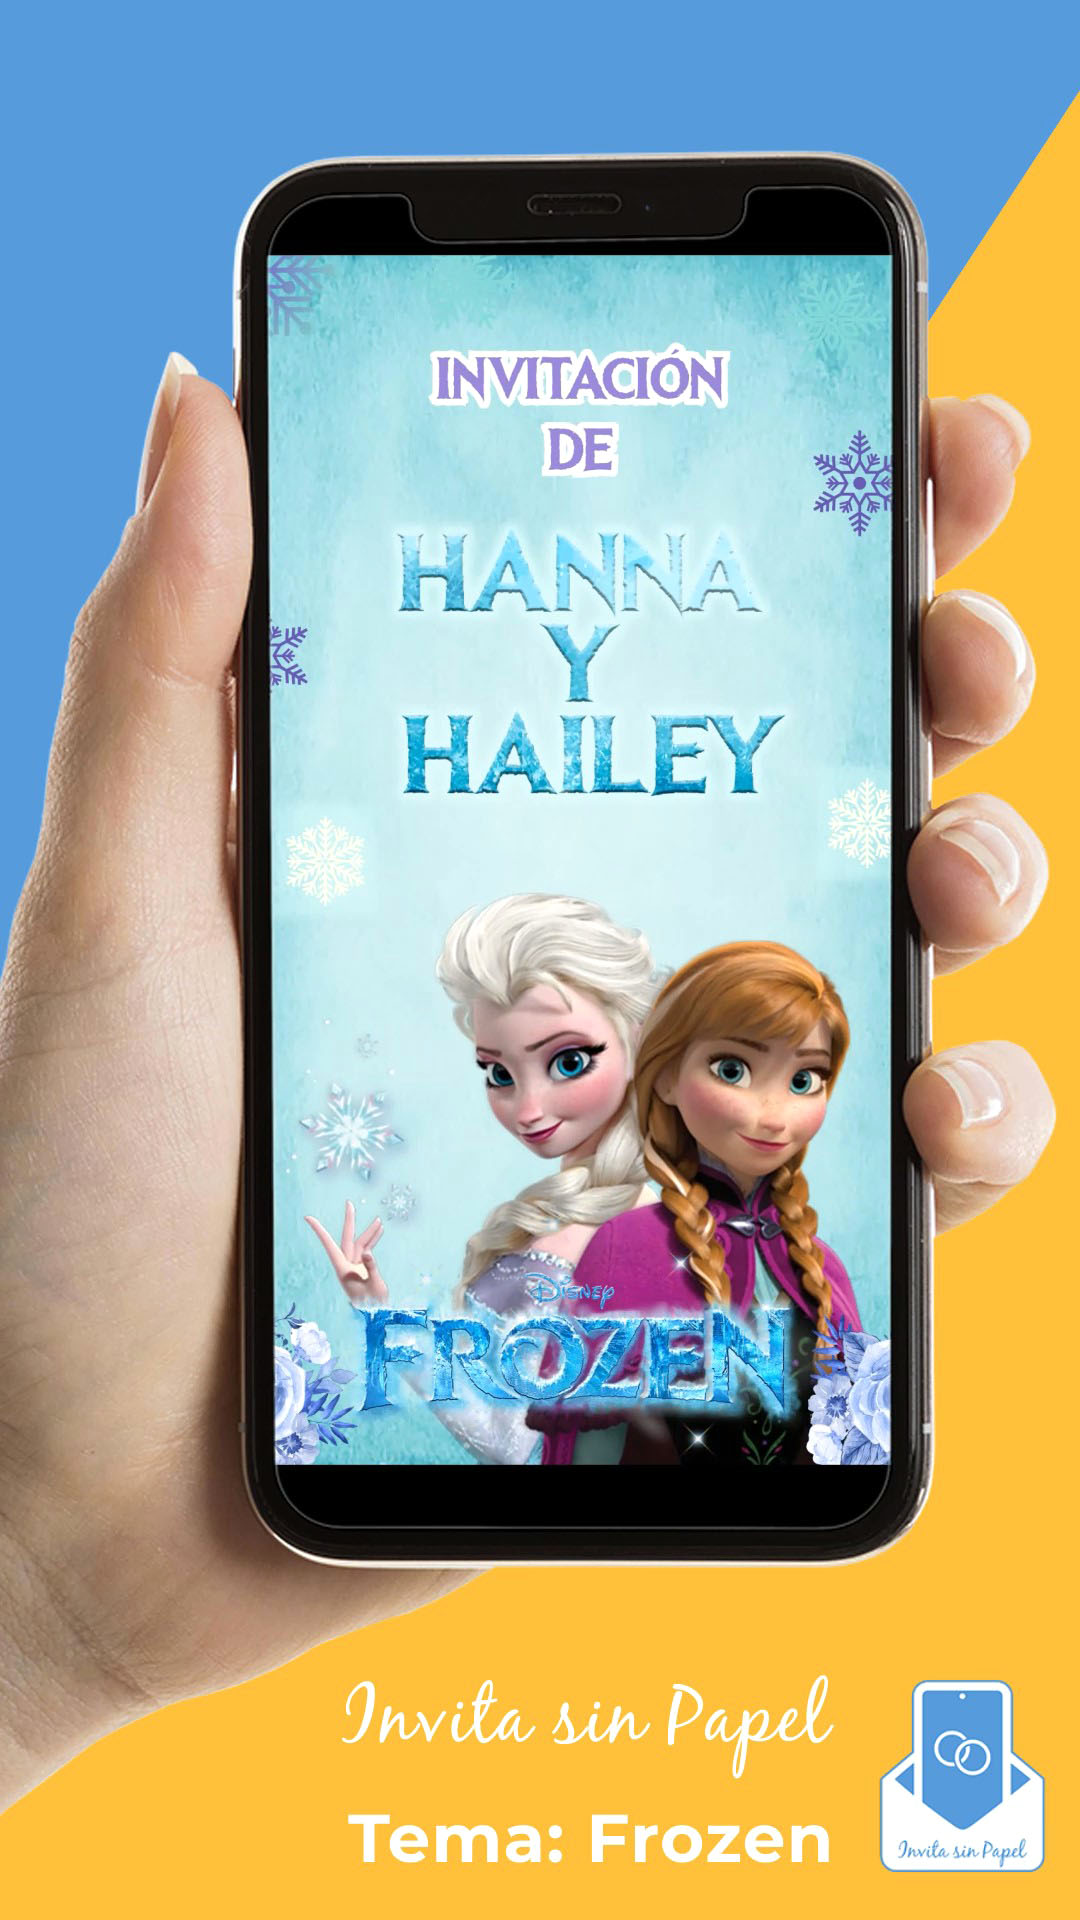 Invitación Frozen promo imagen 1